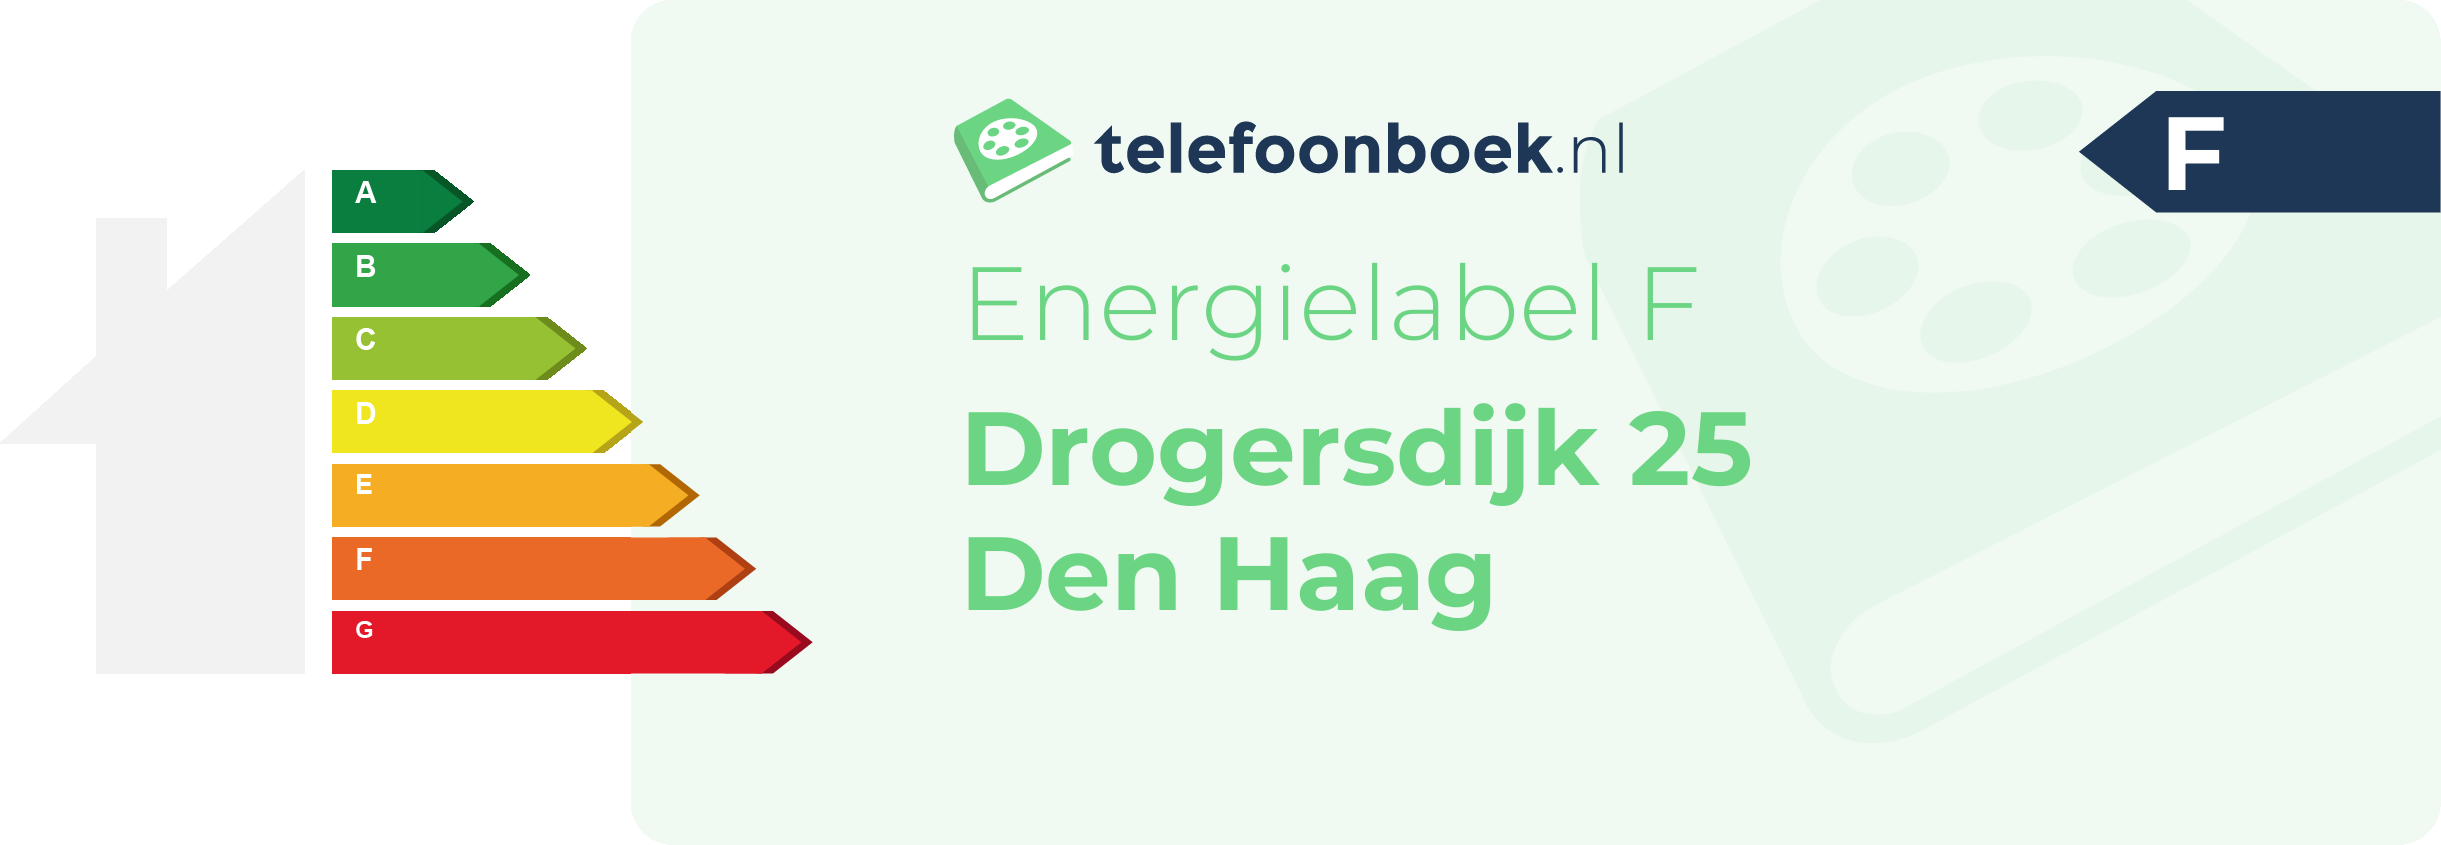 Energielabel Drogersdijk 25 Den Haag